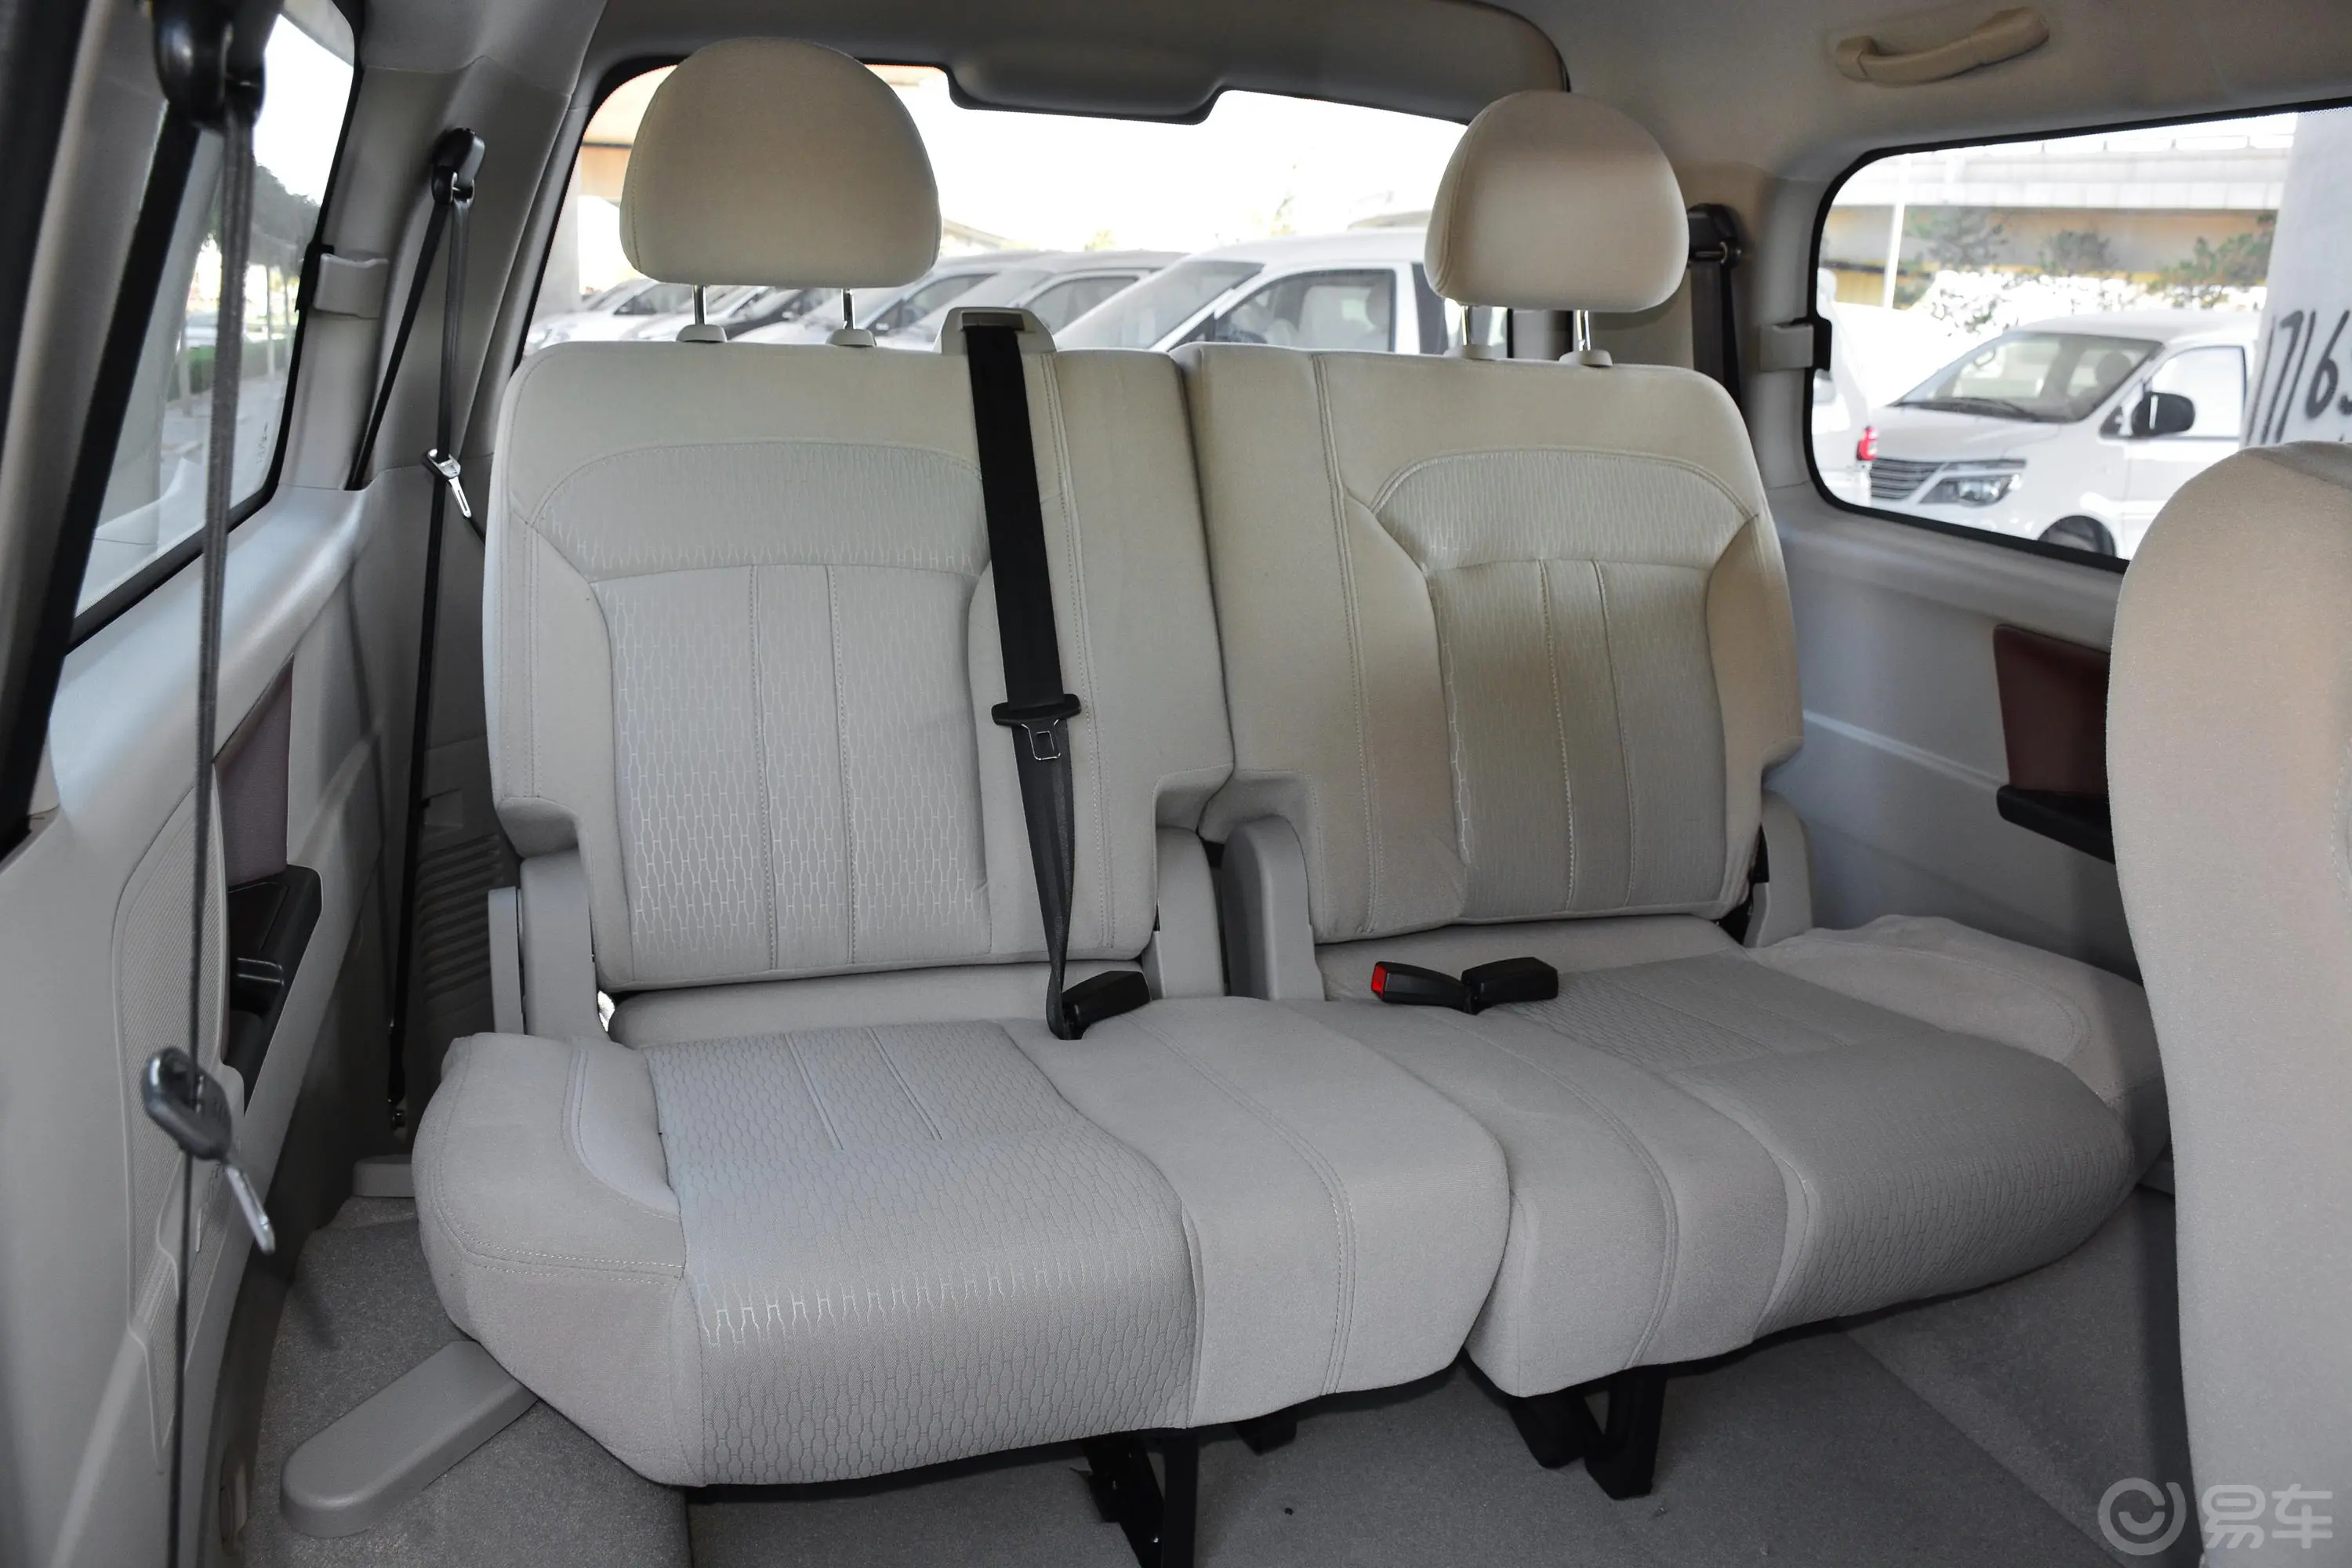 菱智M5 1.6L 手动 舒适版 7座第三排座椅